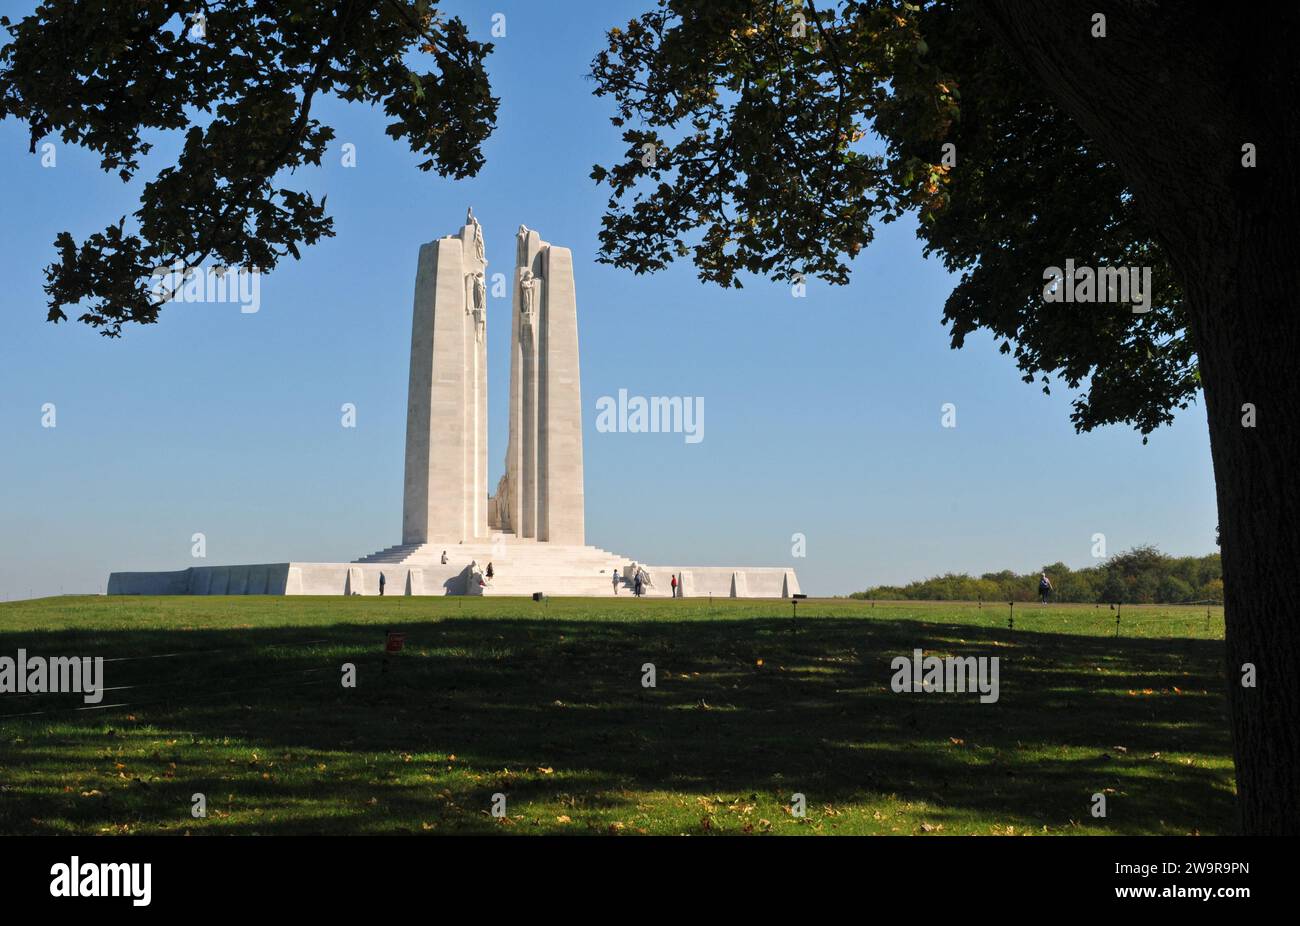 Il Canadian National Vimy Memorial, progettato dallo scultore Walter S. Allward, segna il sito della battaglia di Vimy Ridge, in Francia, durante la prima guerra mondiale. Foto Stock